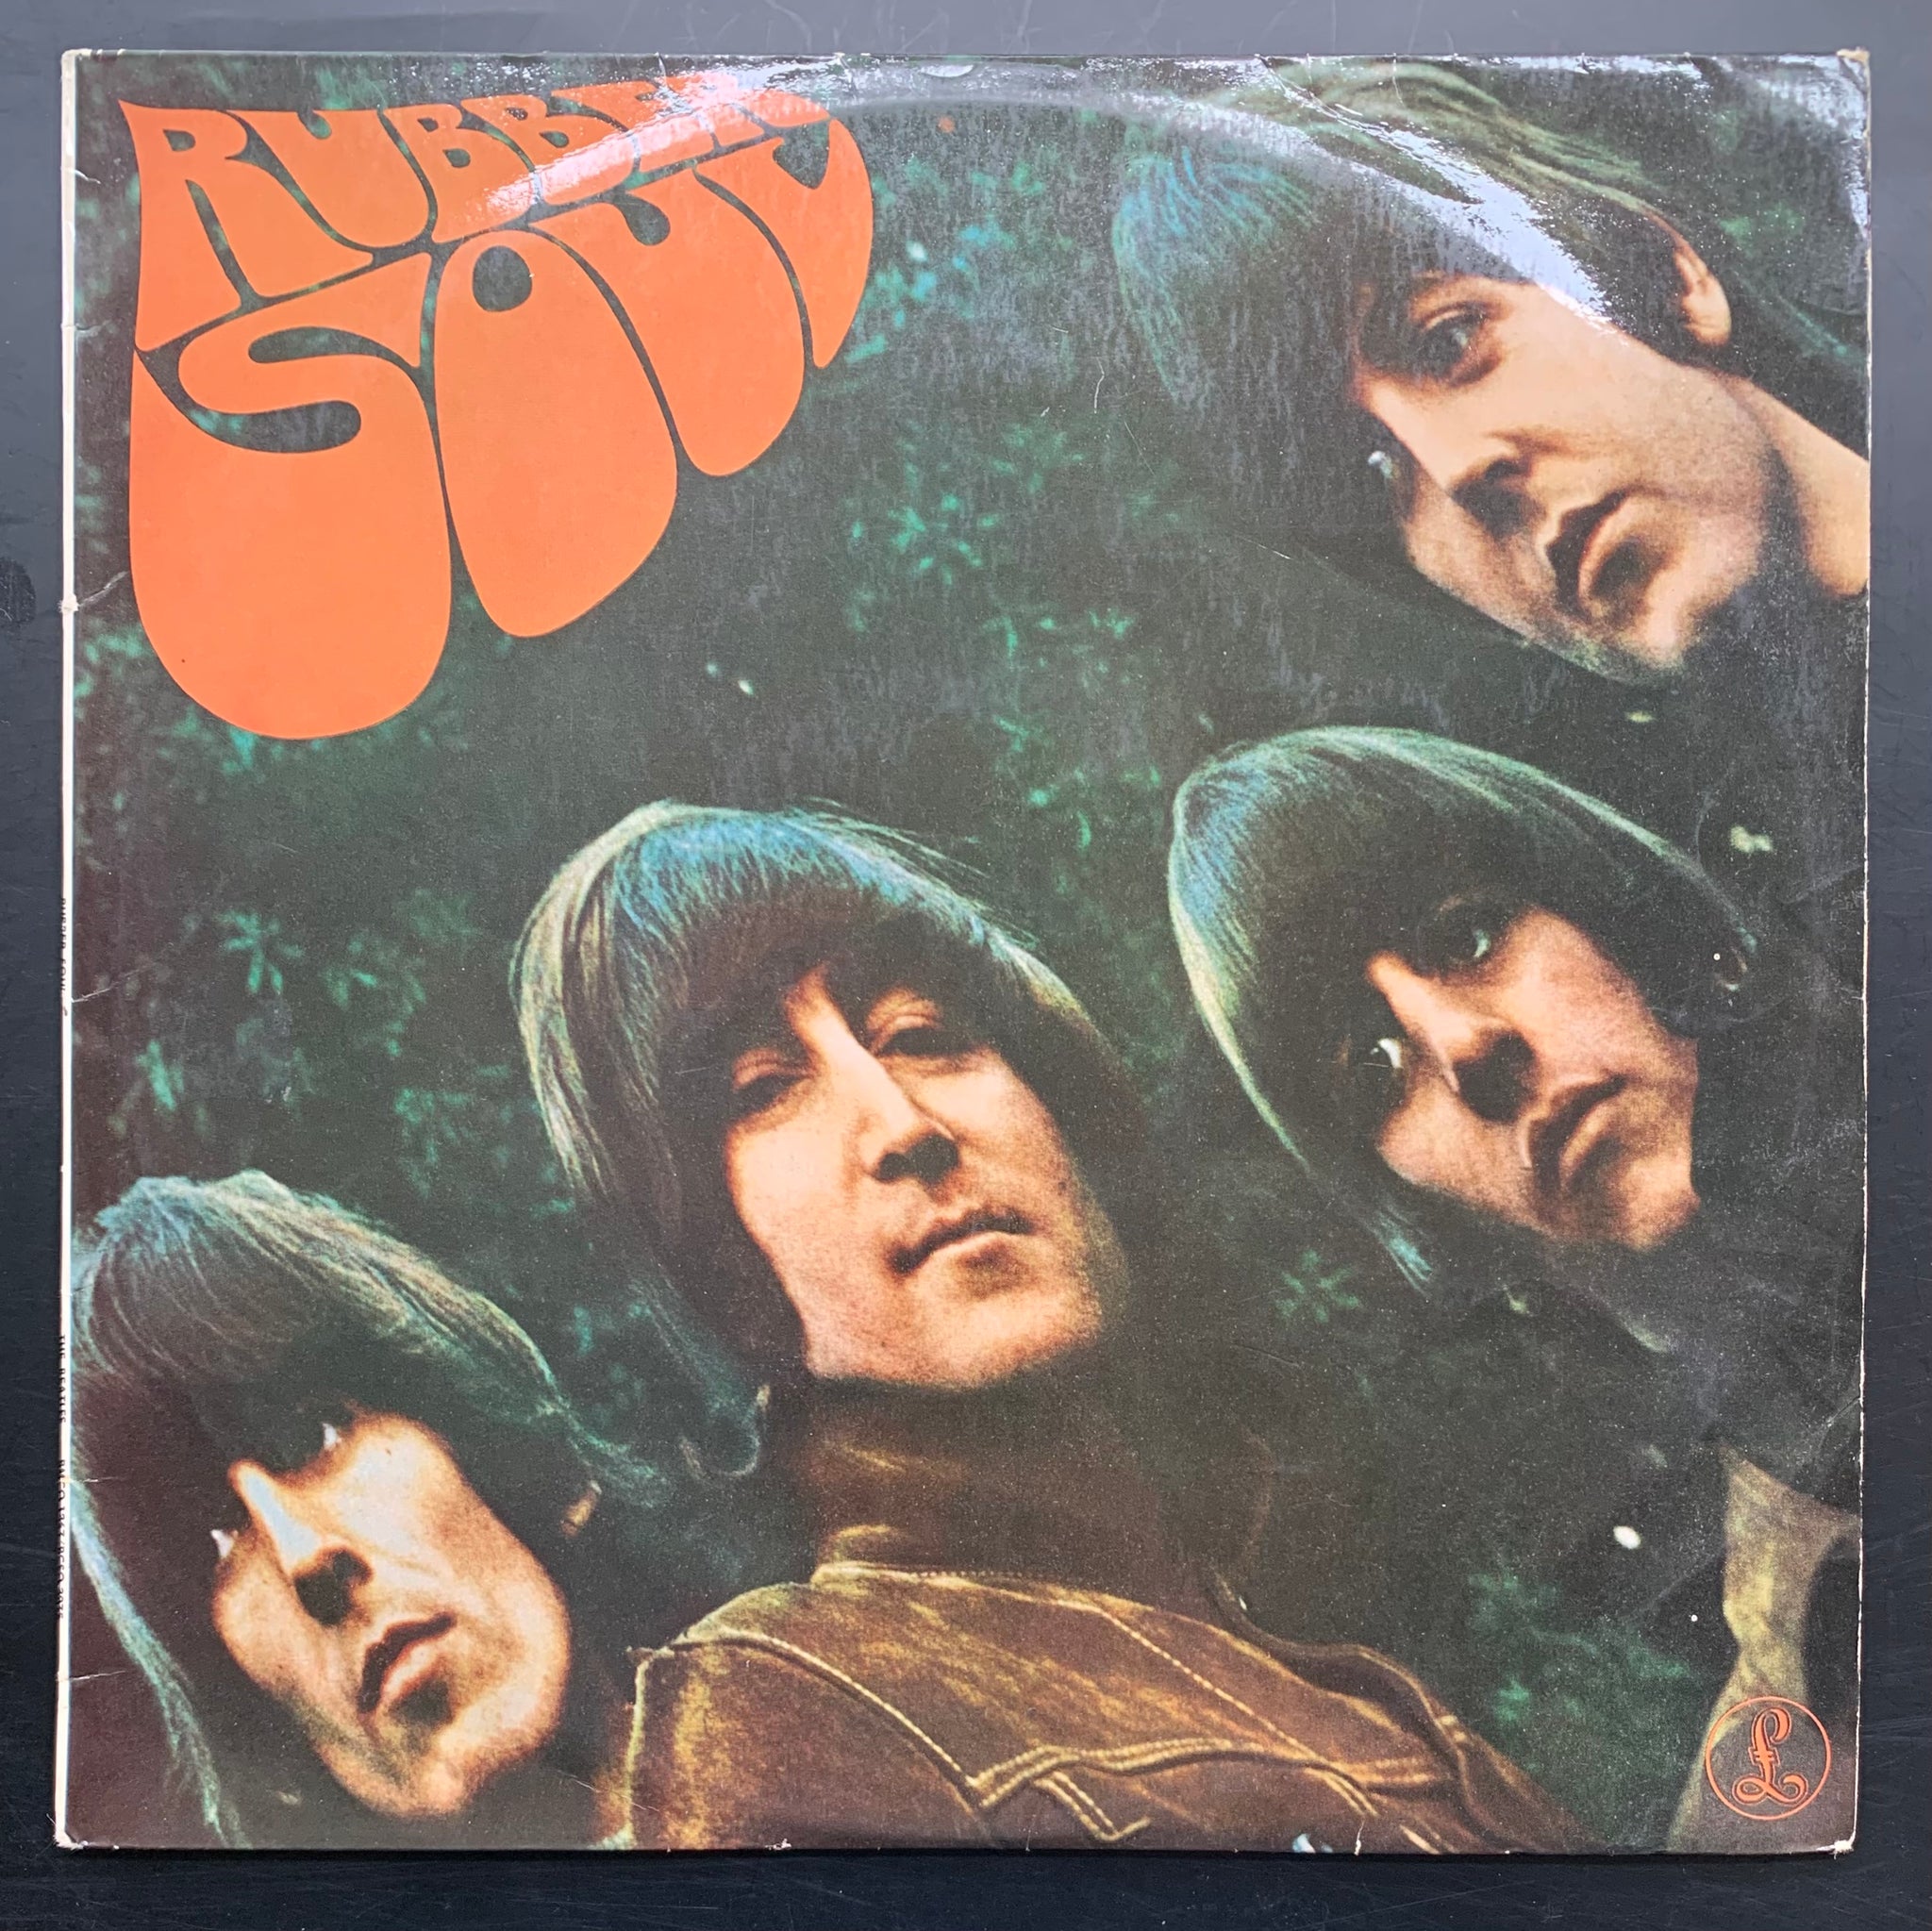 The Beatles 'Rubber Soul' LP